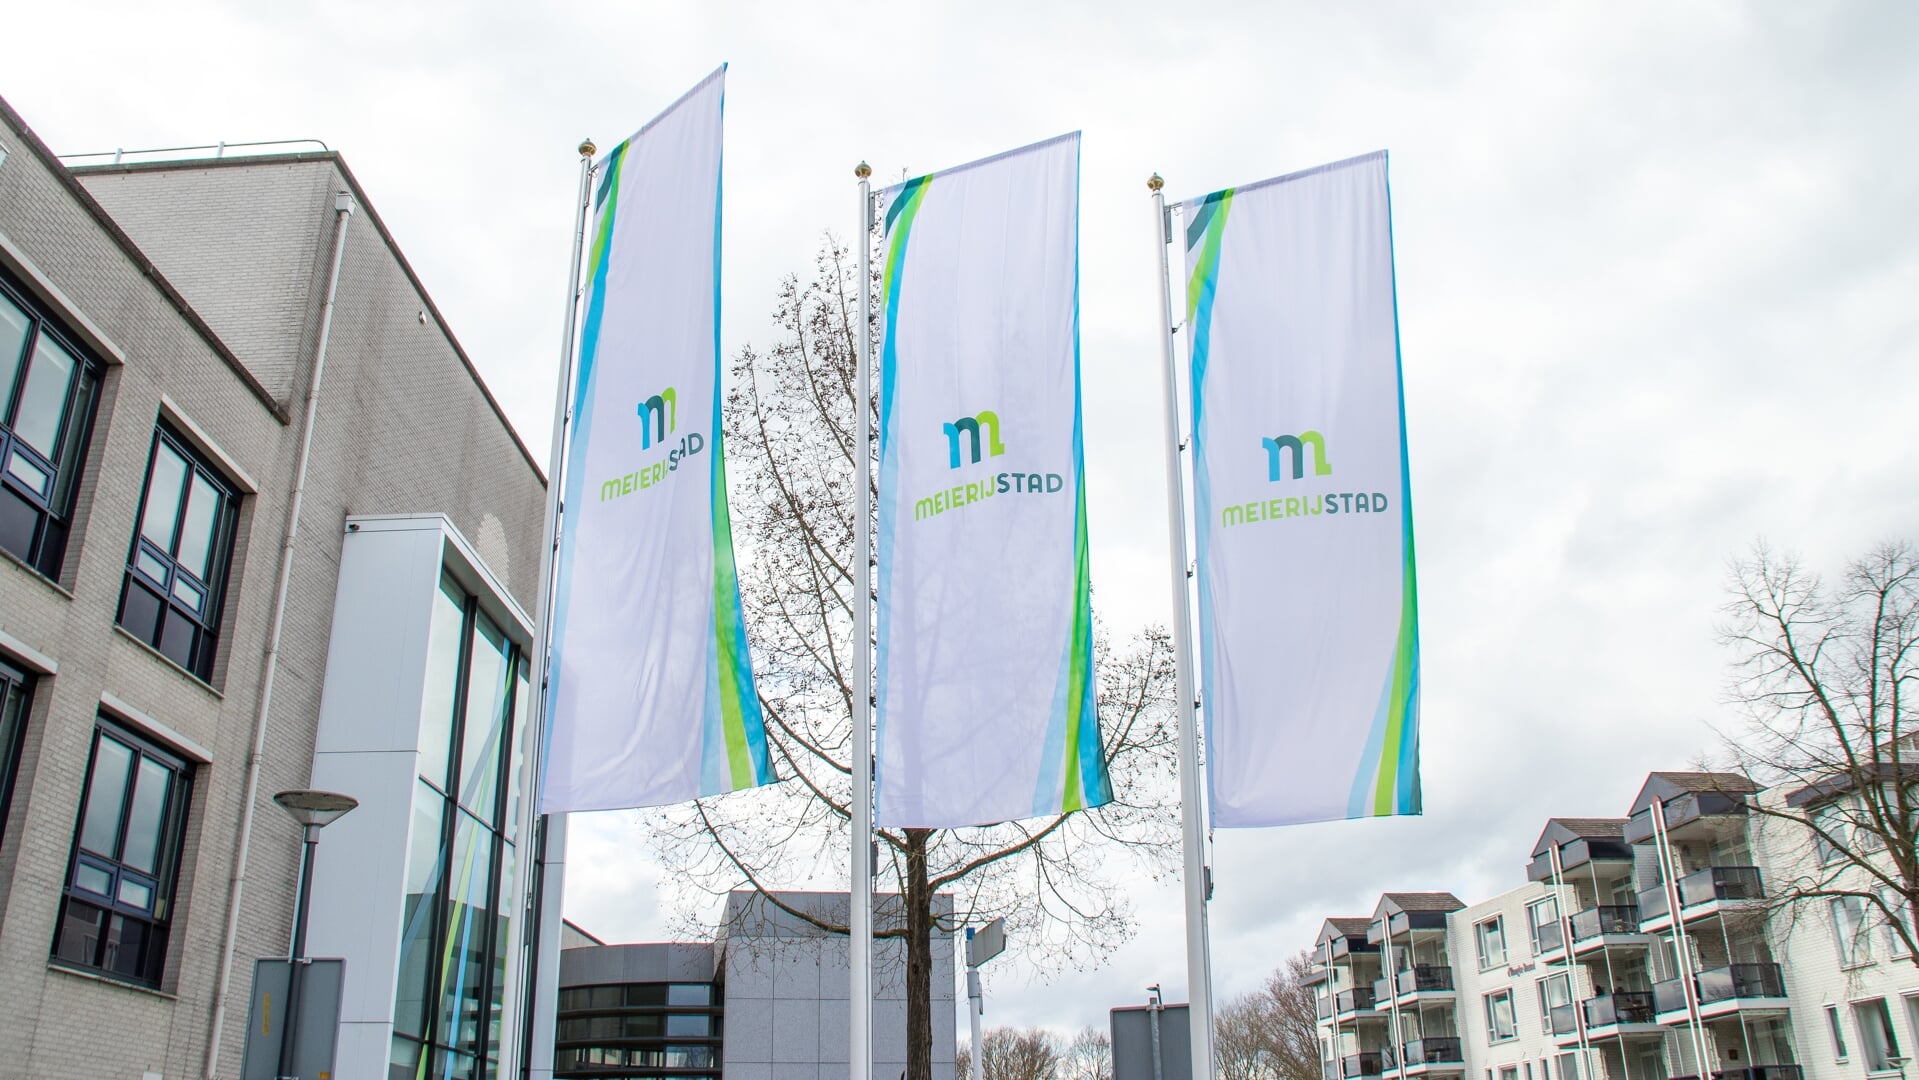 Vlaggen voor het gemeentehuis Meierijstad in Veghel